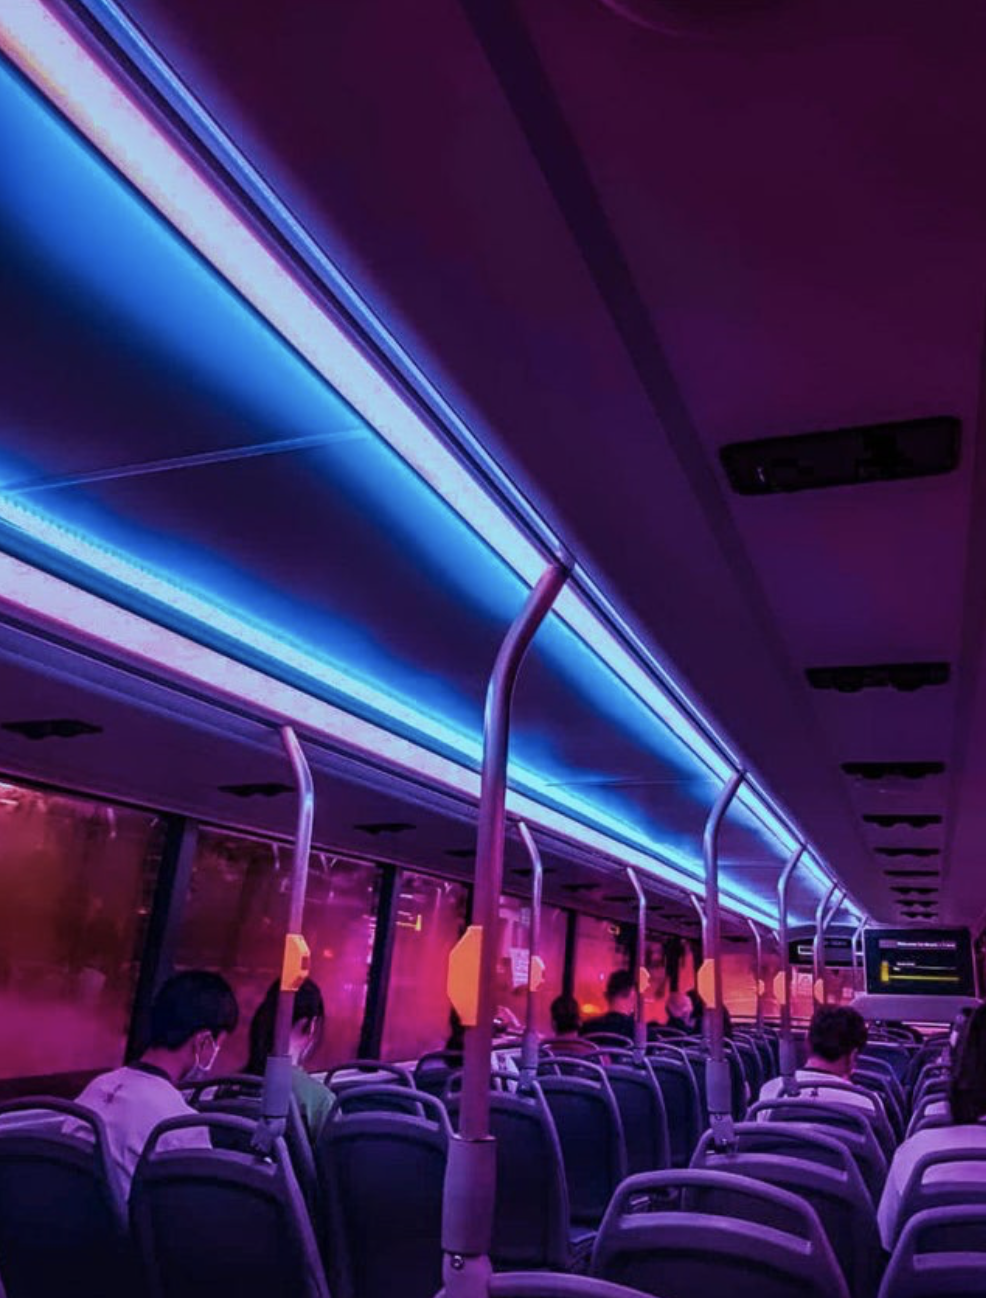 Electric bus interior